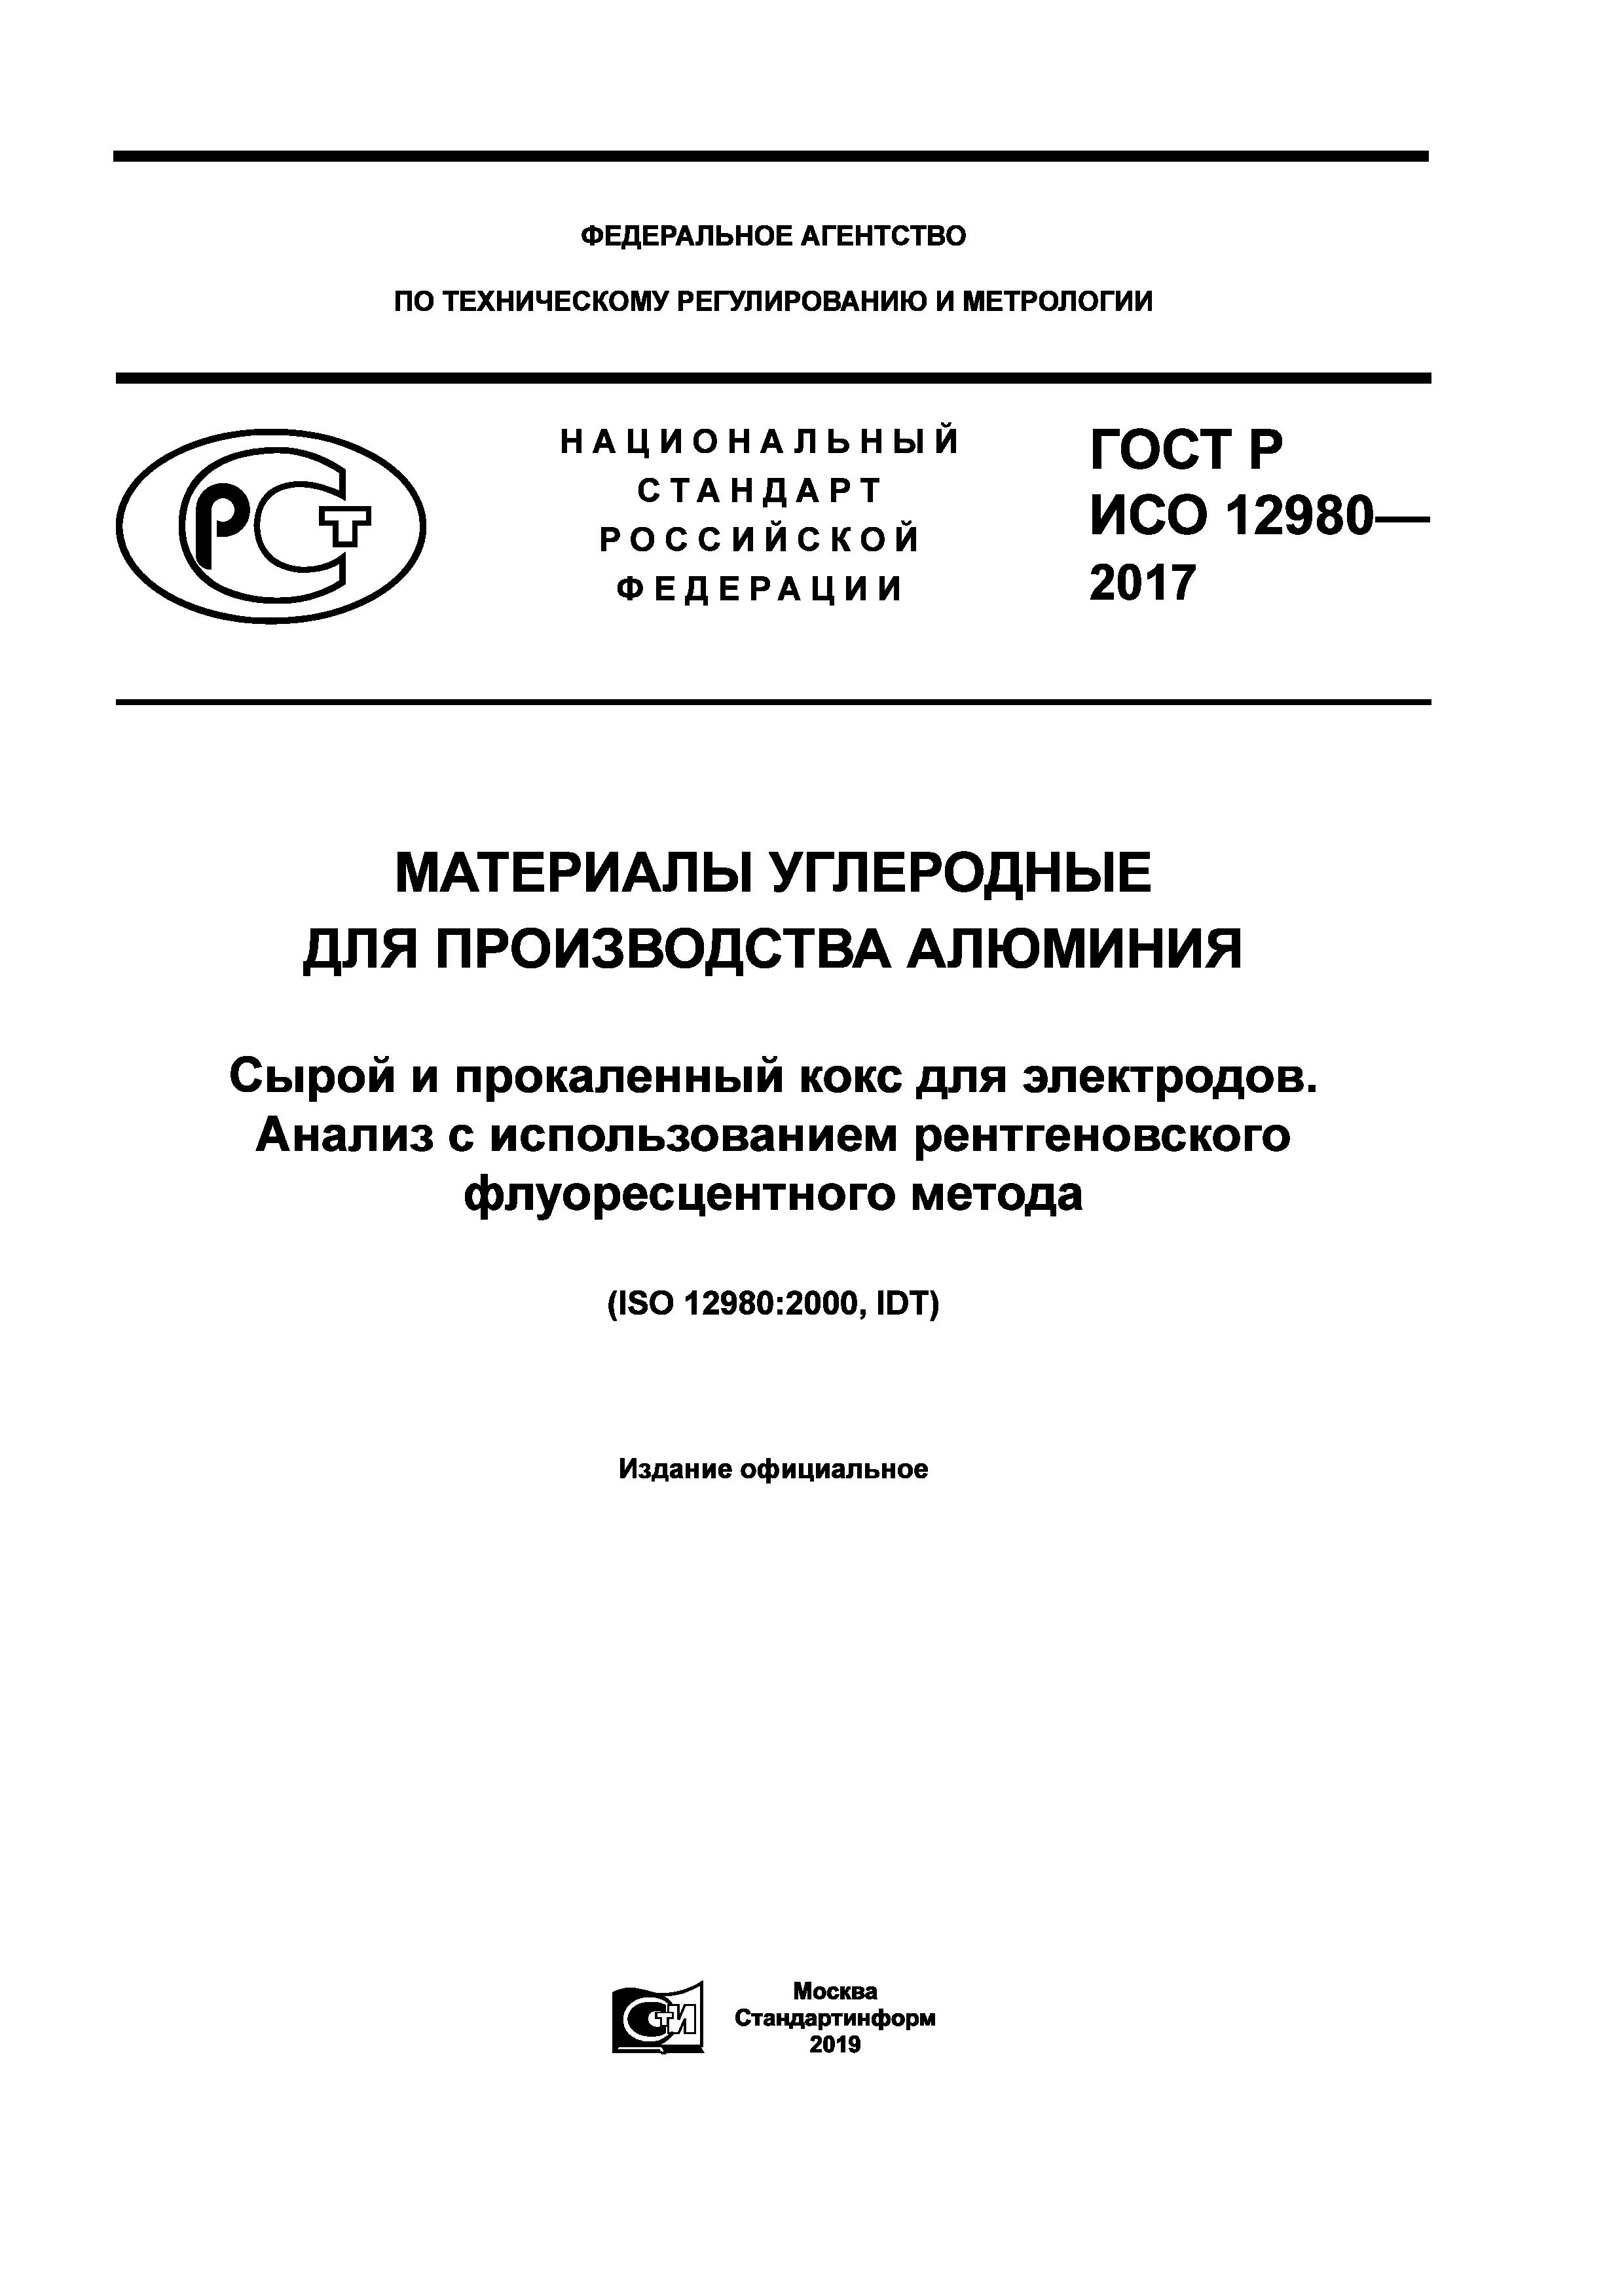 ГОСТ Р ИСО 12980-2017